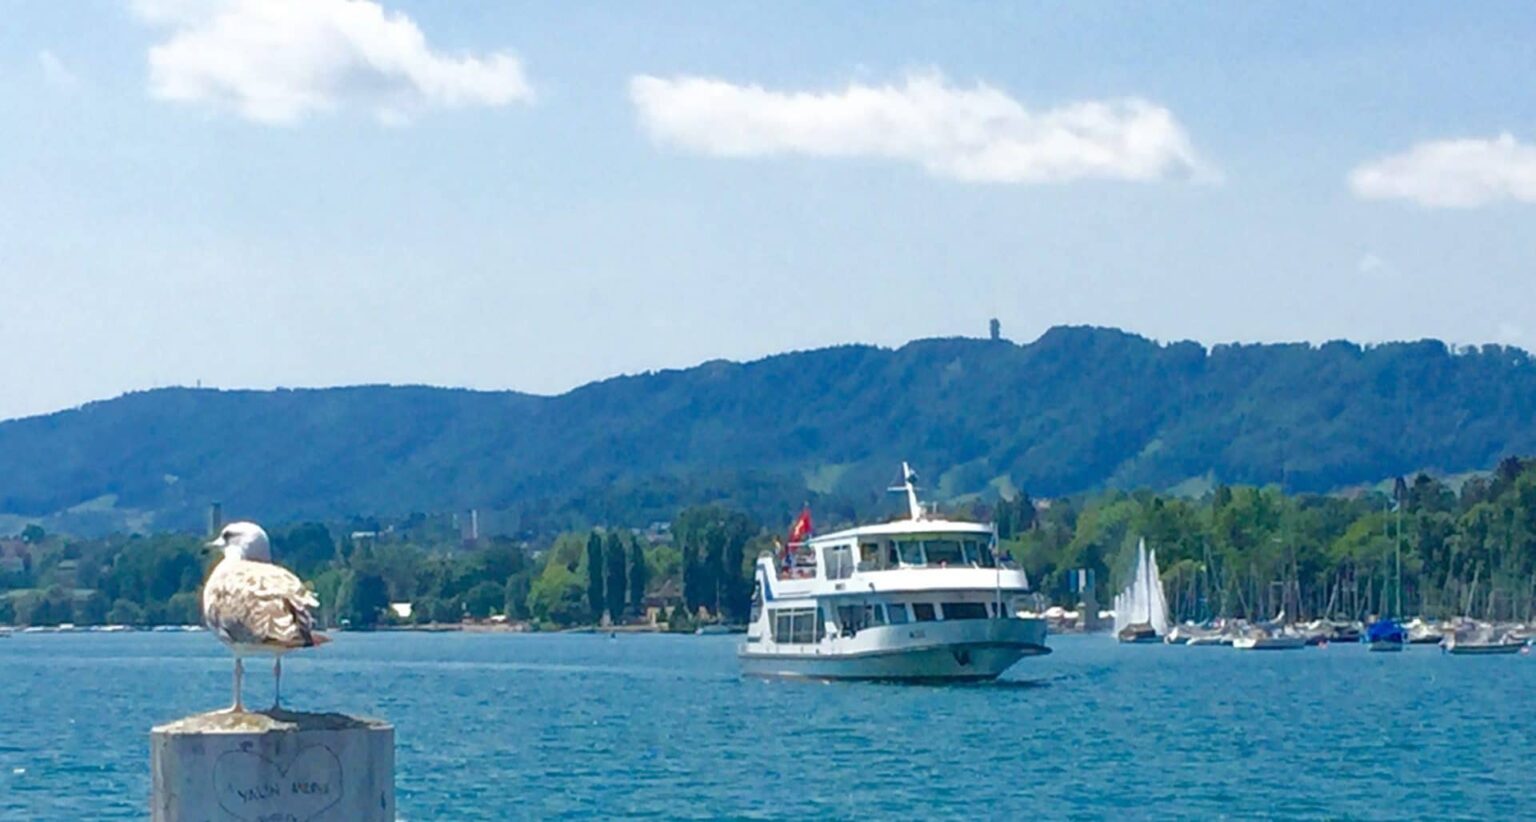 Zürichsee-Schiff nähert sich dem Steg